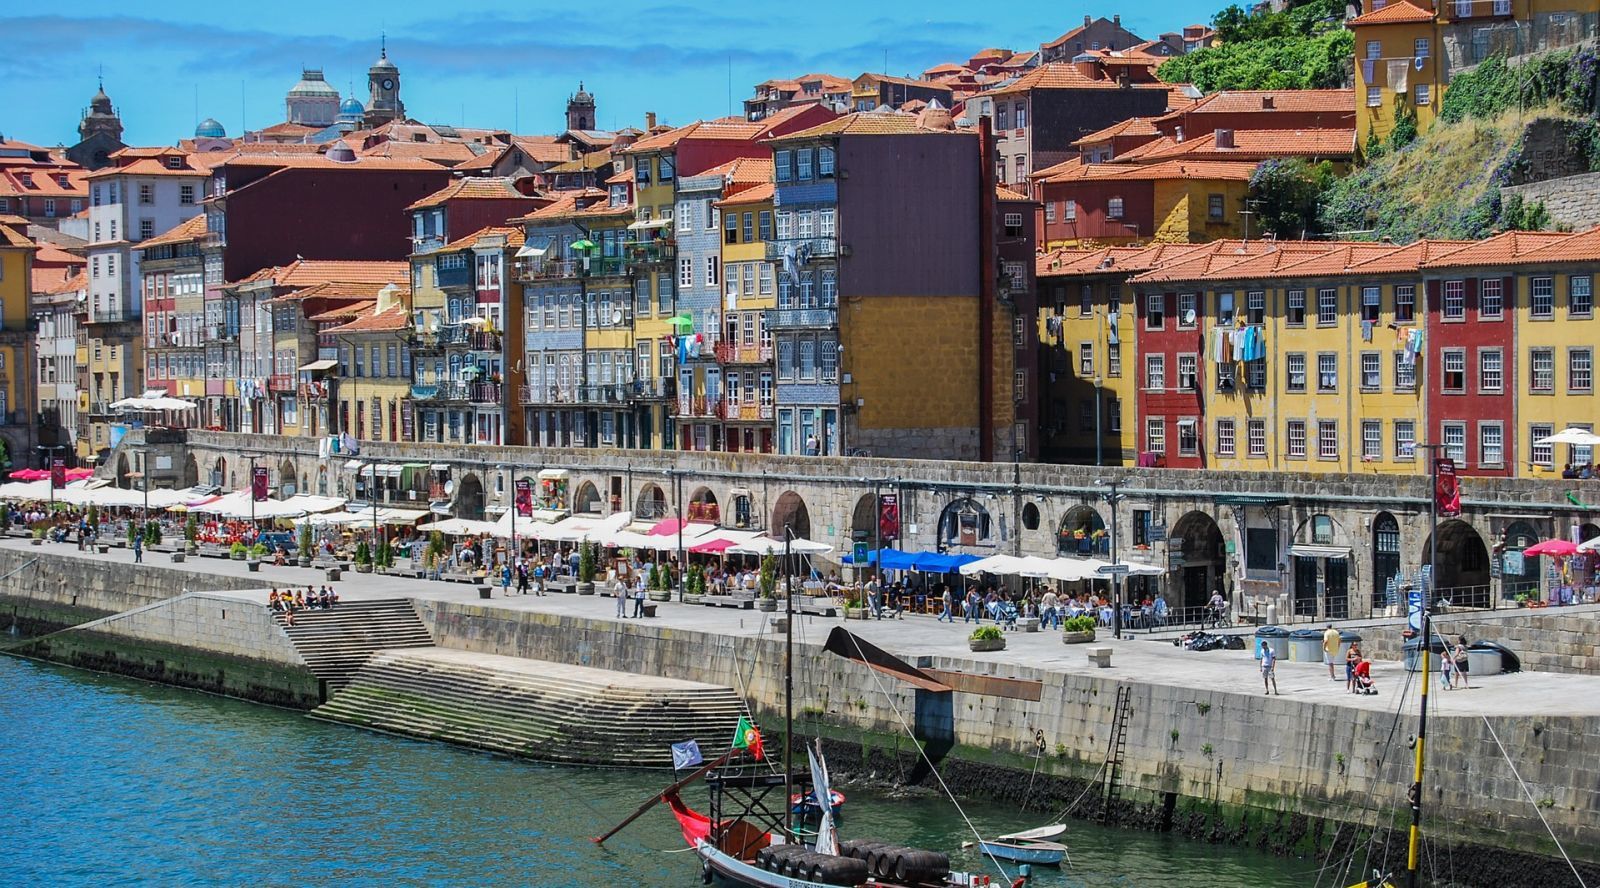 Hoteles de Portugal - Descubre su color